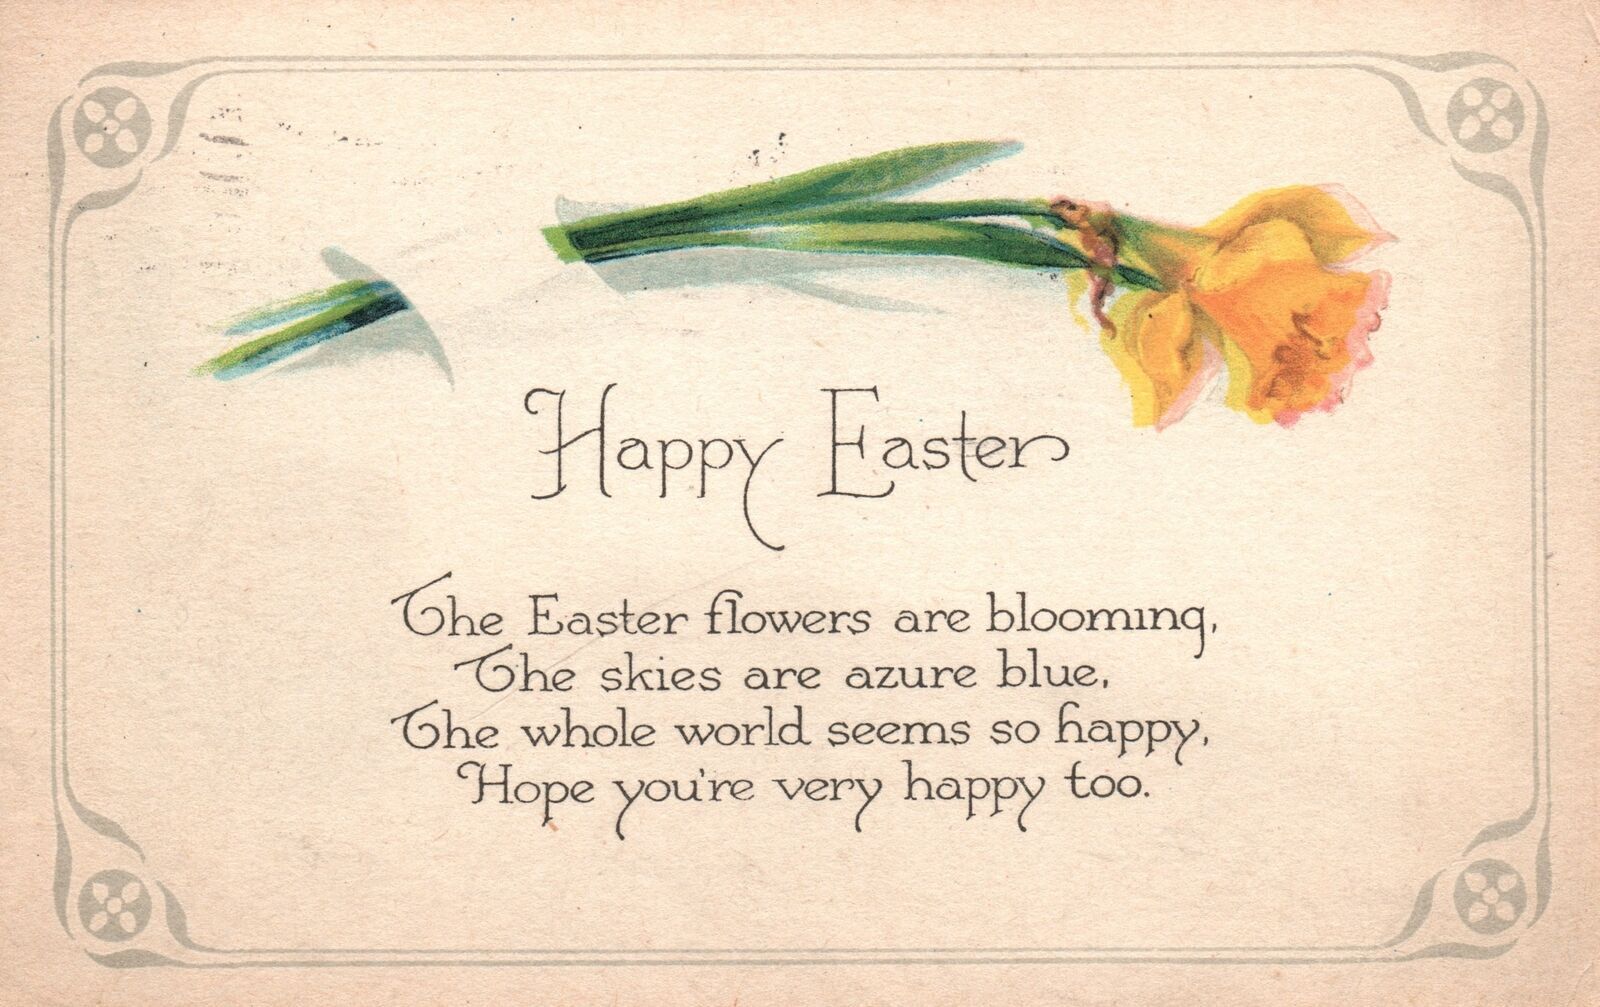 Vintage Postcard 1924 Happy Easter Flowers Are Blooming Greetings On Eastertide